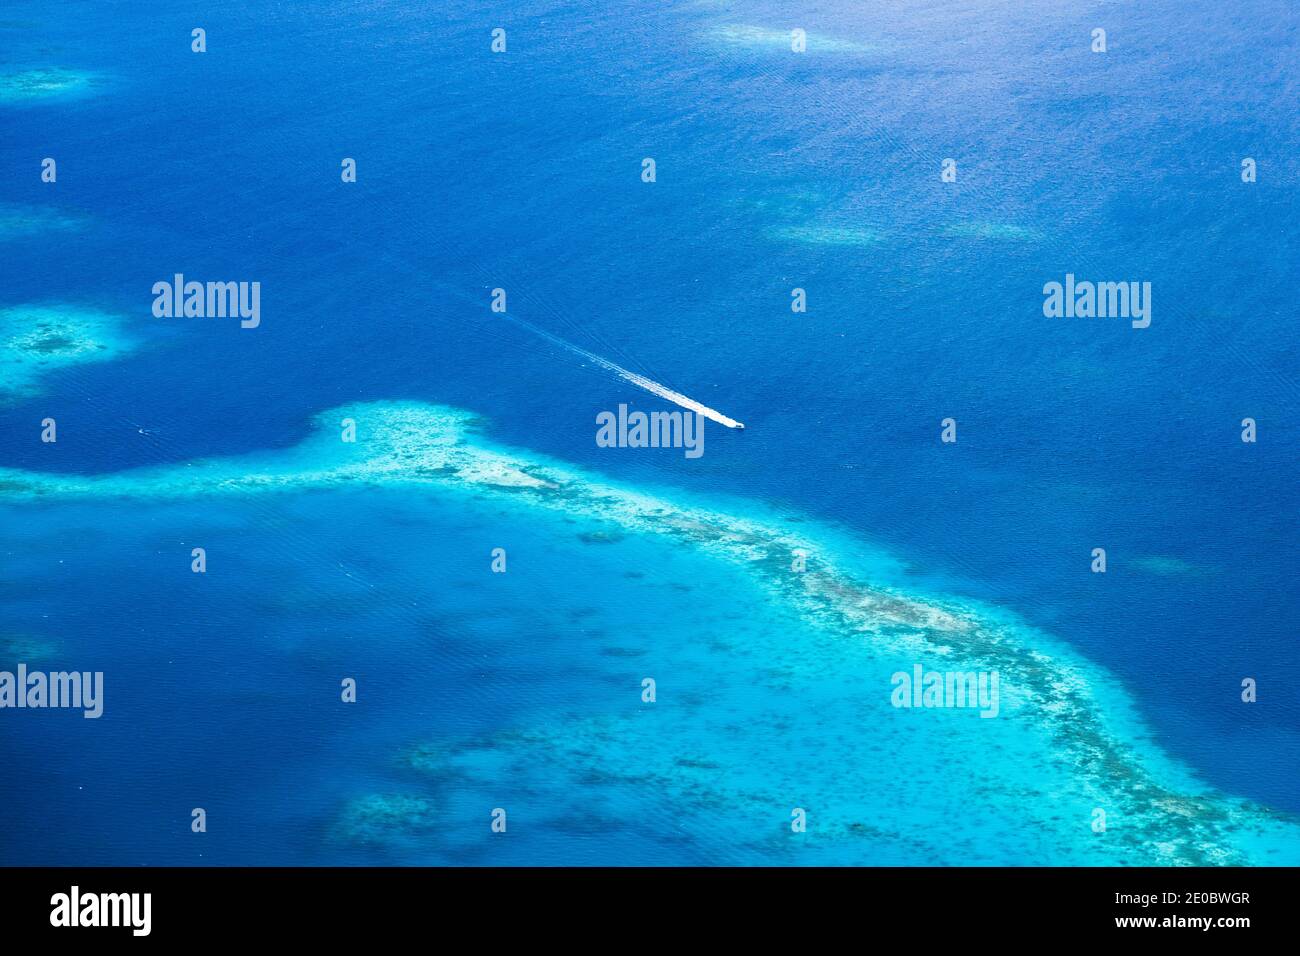 Vue aérienne du récif corallien et du bateau, les îles Rock, au-dessus des îles Omekang, Koror, Palau, Micronésie, Océanie Banque D'Images